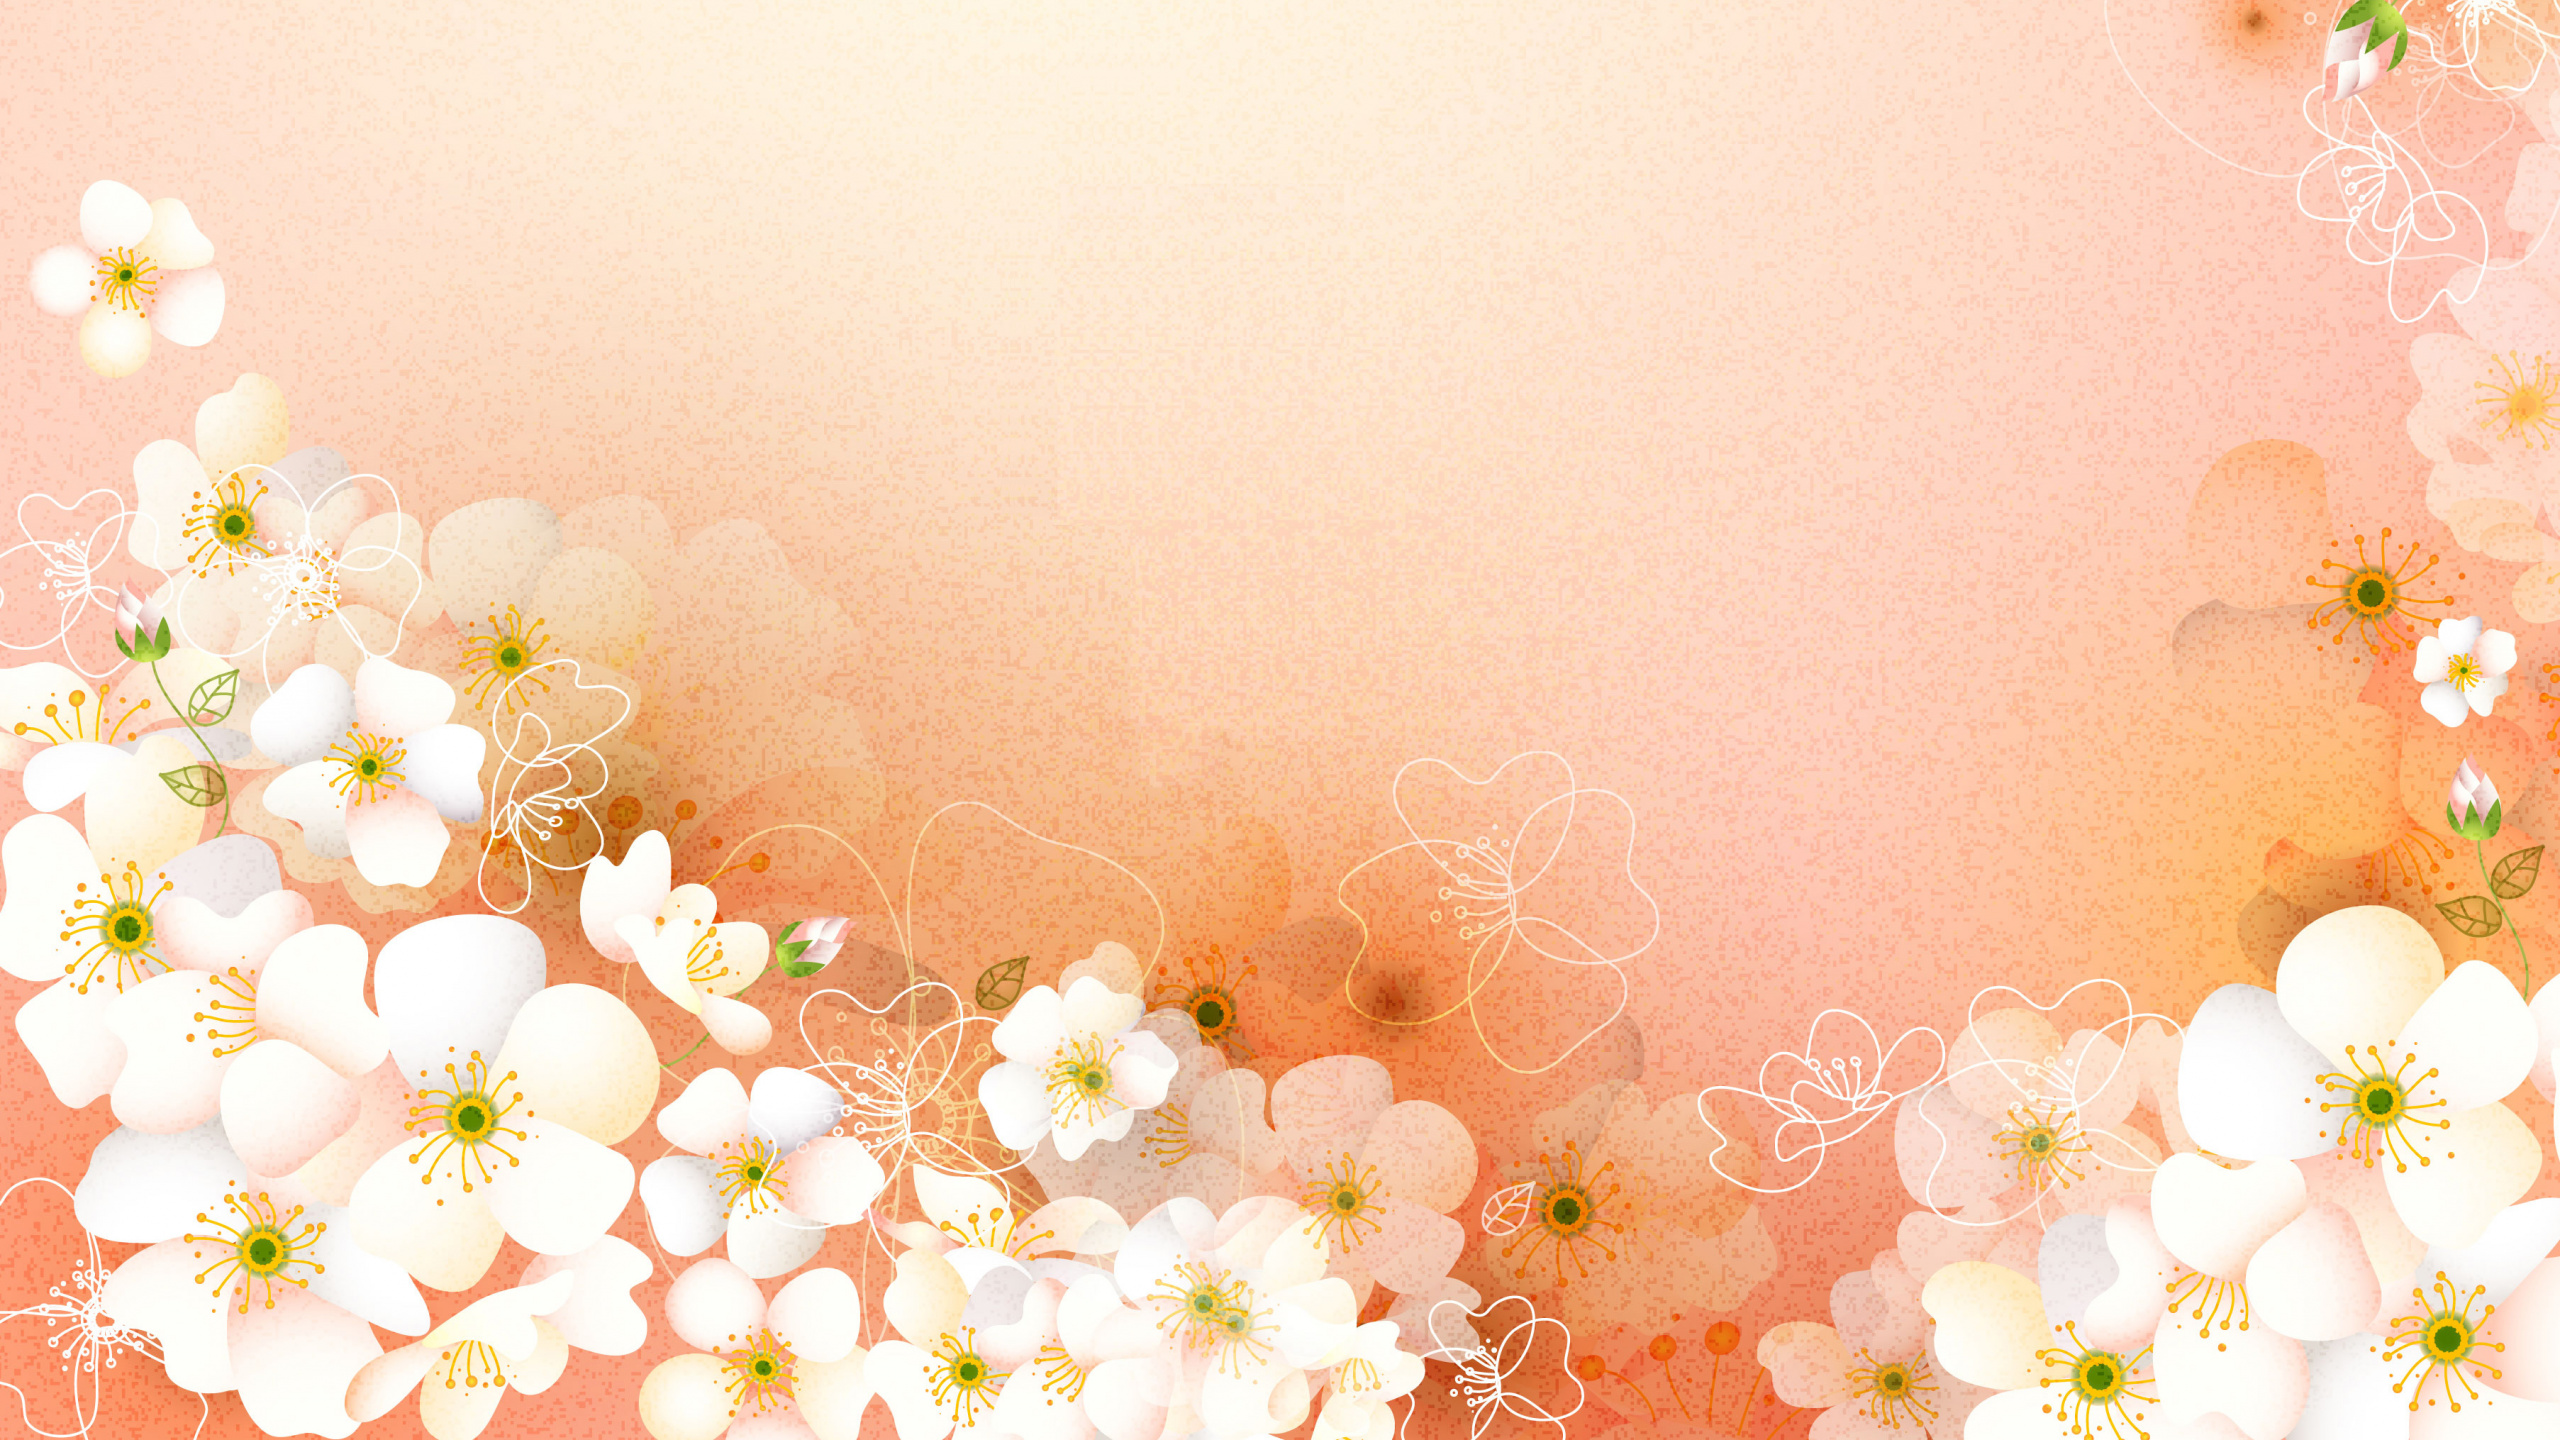 粉红色, 弹簧, 花卉设计, 开花, 樱花 壁纸 2560x1440 允许